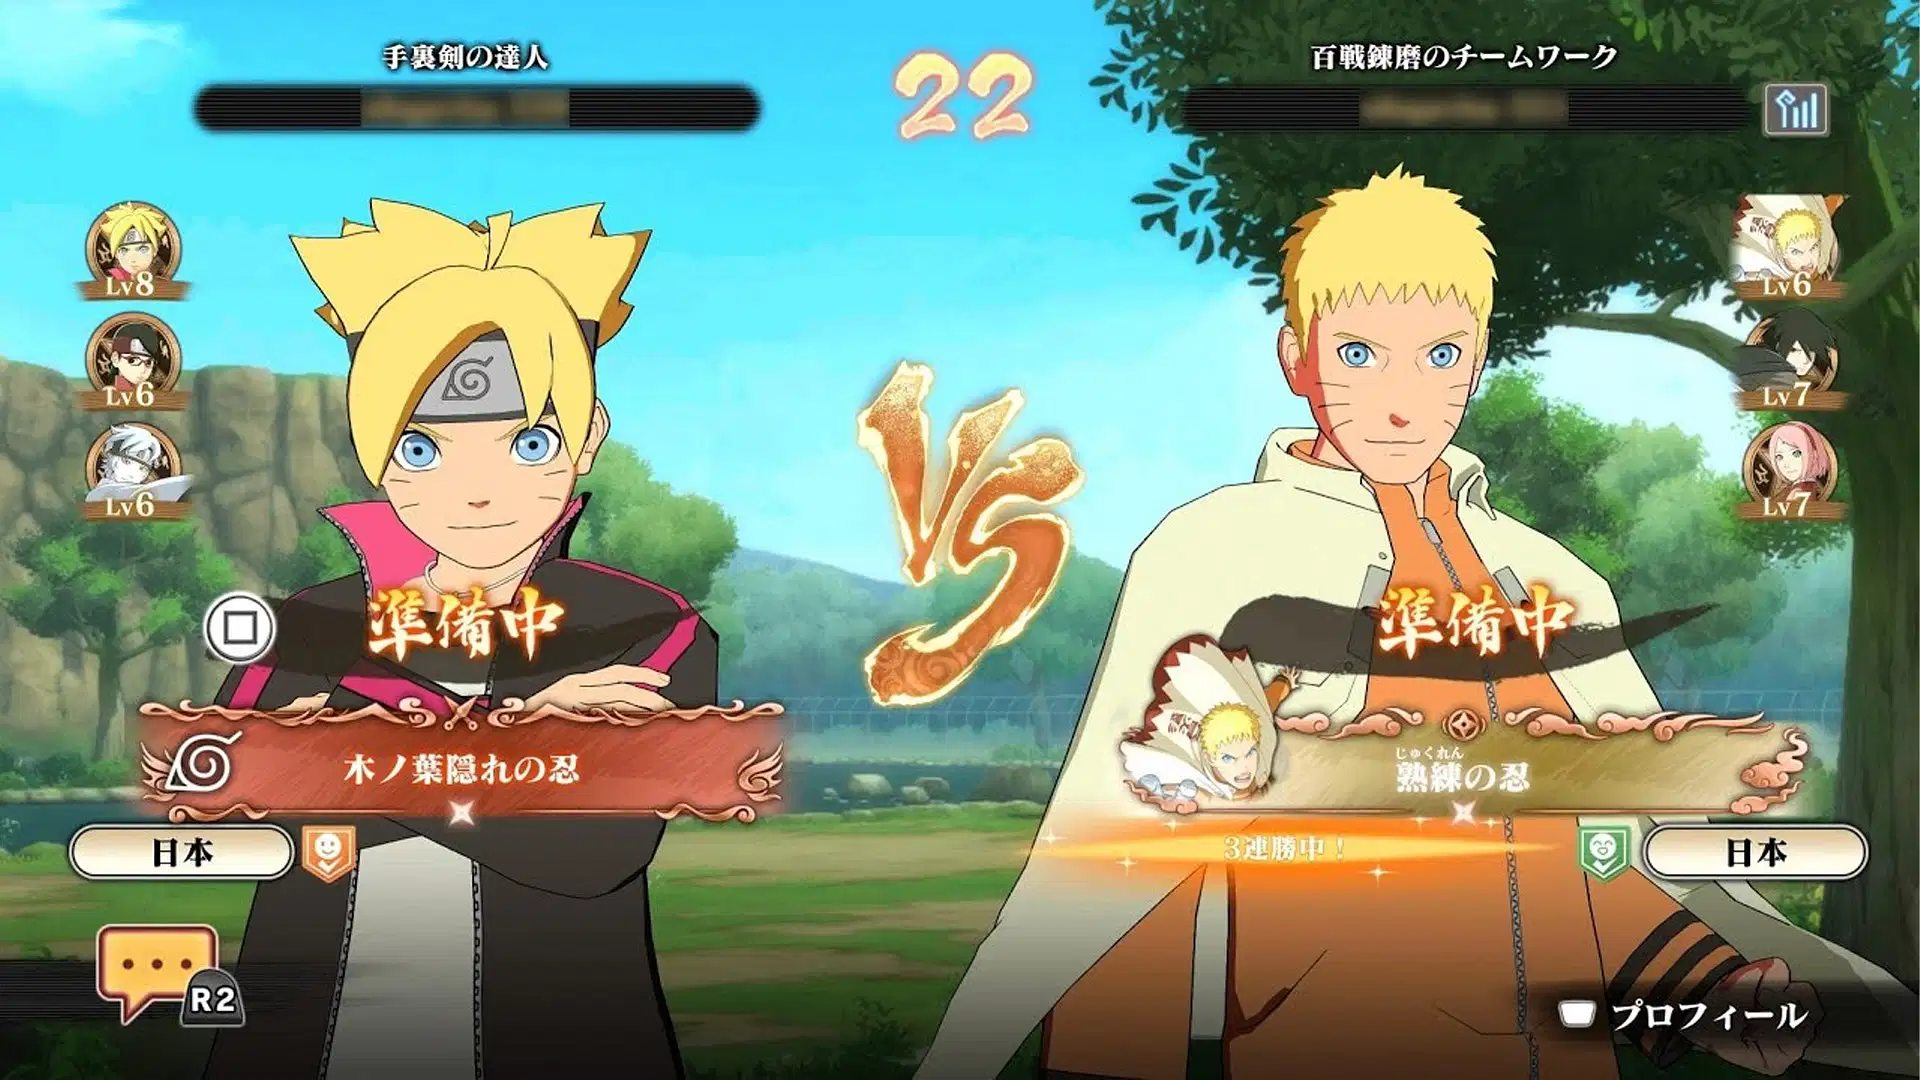 Namco vai colaborar com a Tencent em Naruto Online